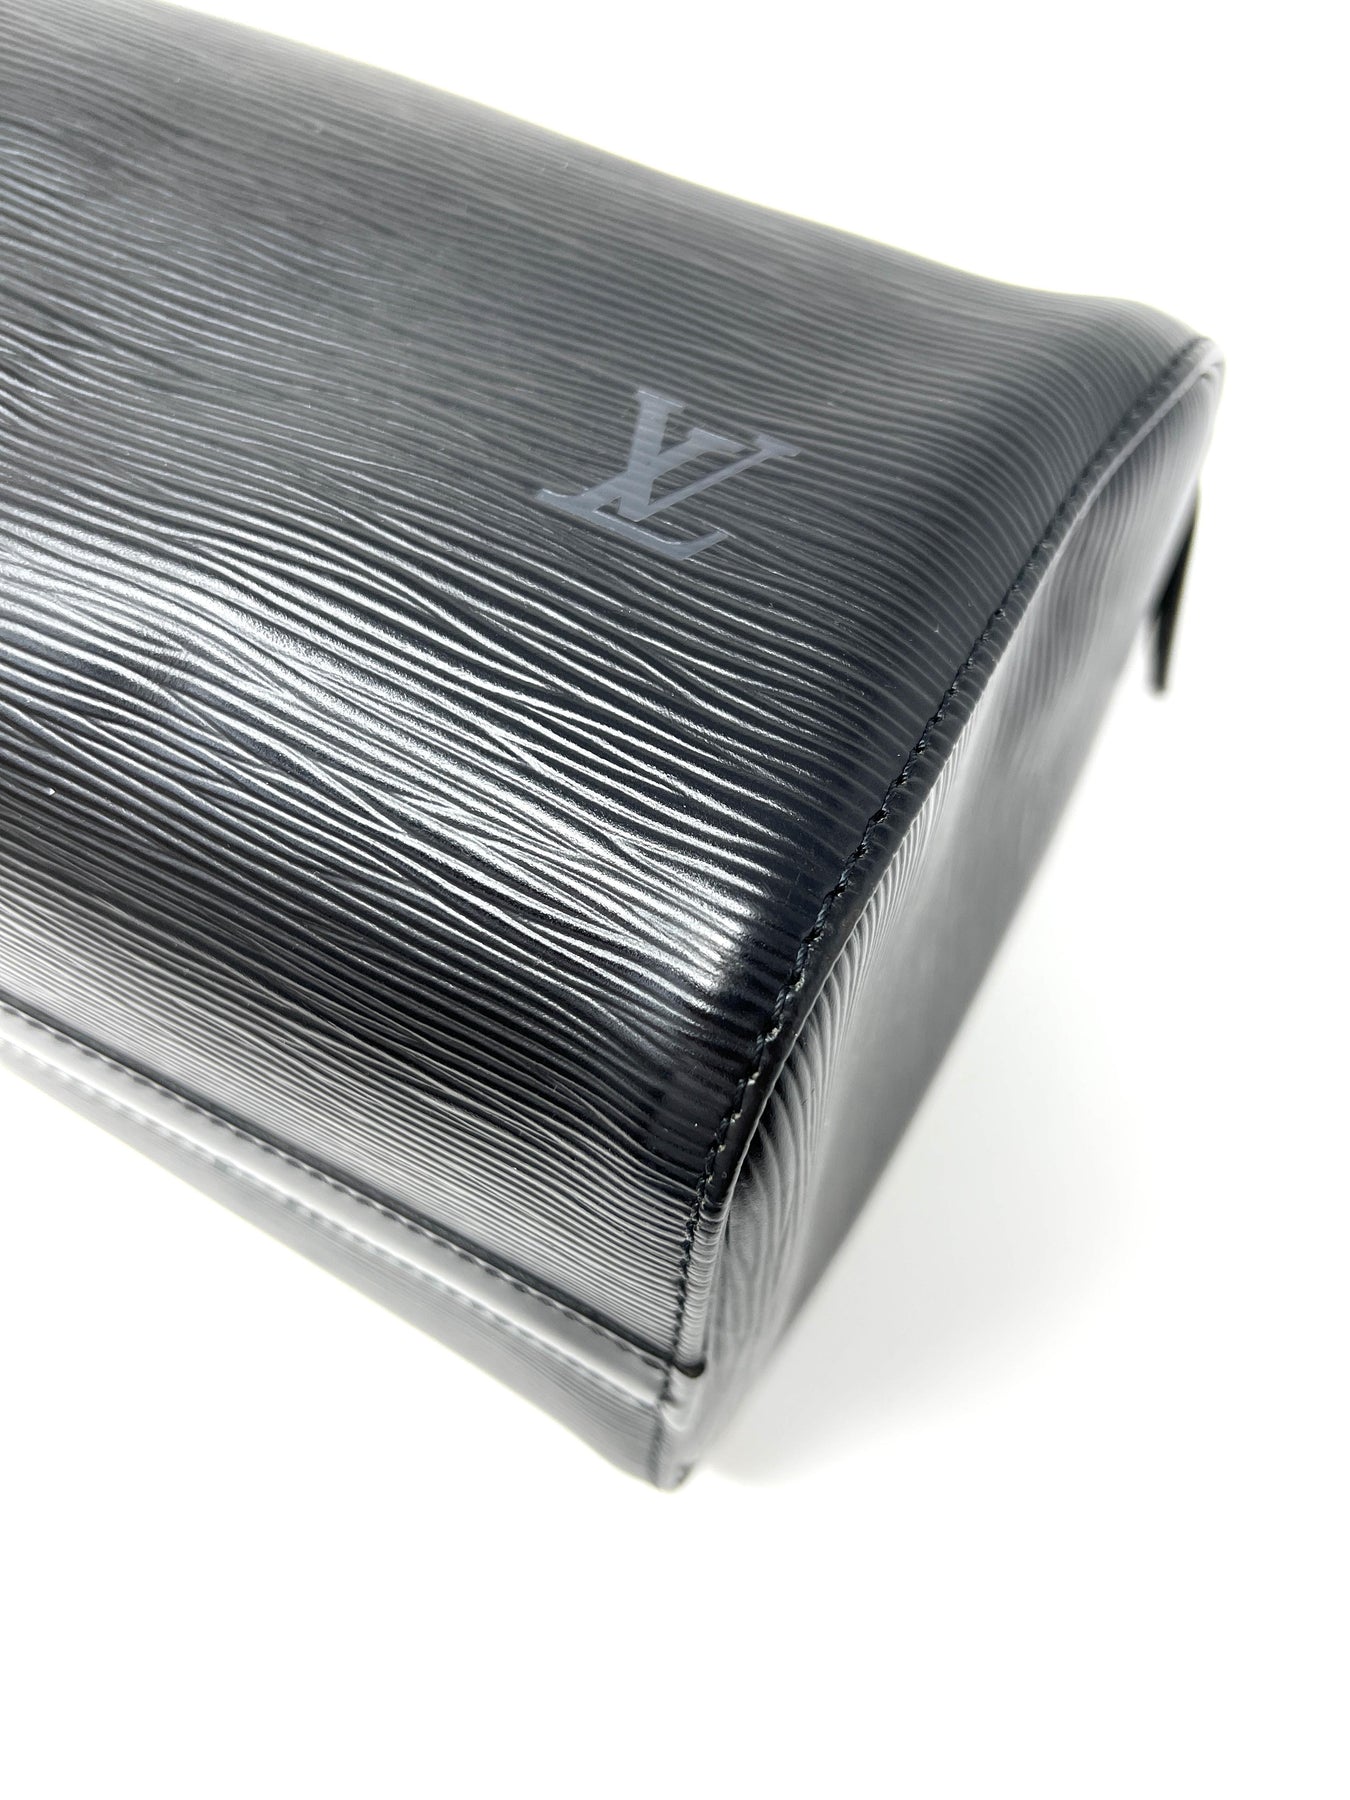 Louis Vuitton Black Epi Speedy 25 Boston PM 861025